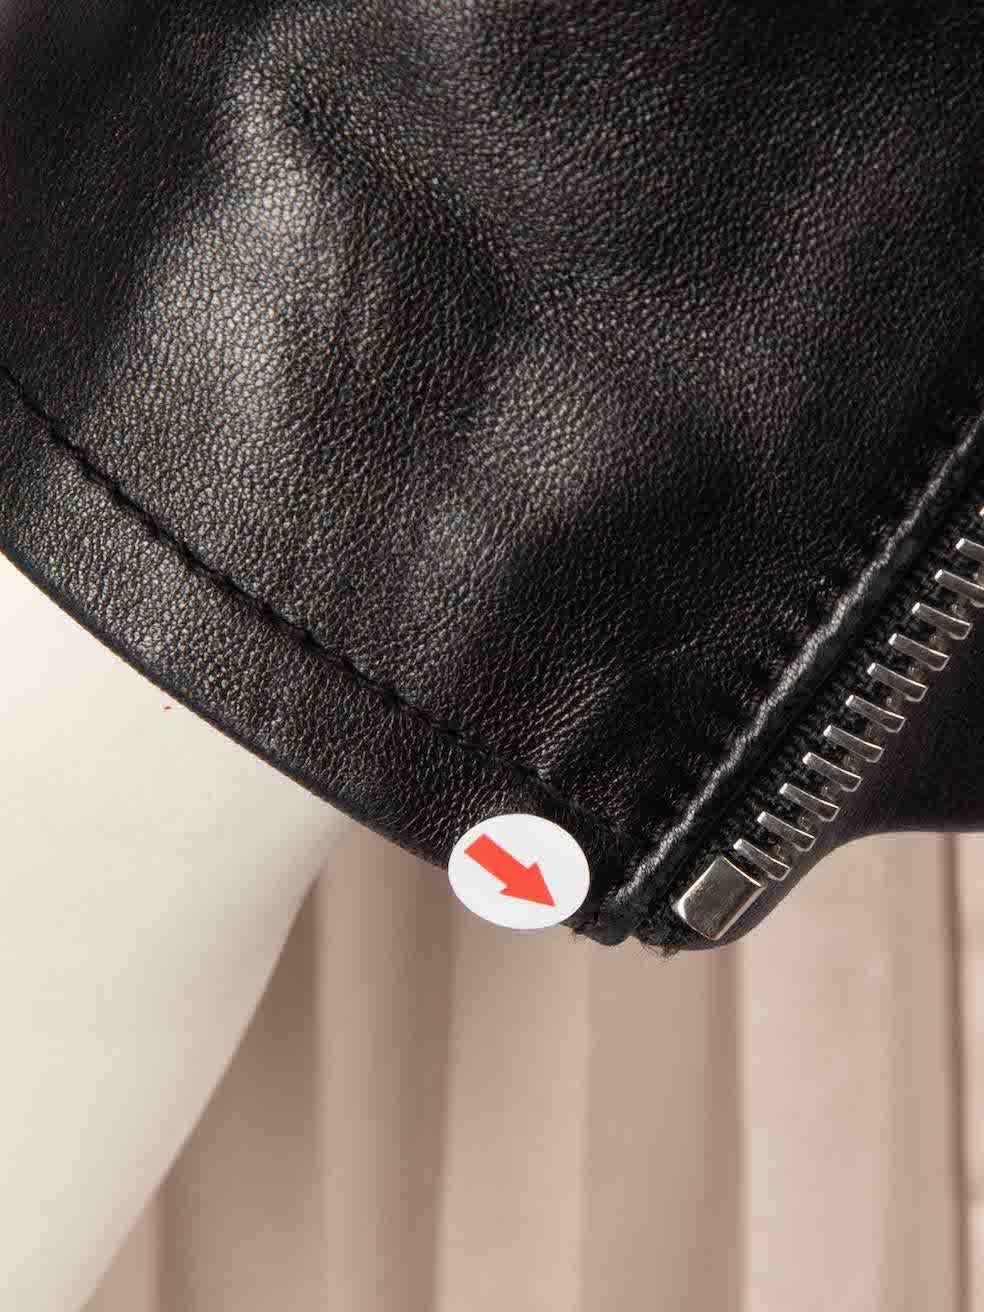 Saint Laurent Black Leather Zip Detail Biker Jacket Size M For Sale 2